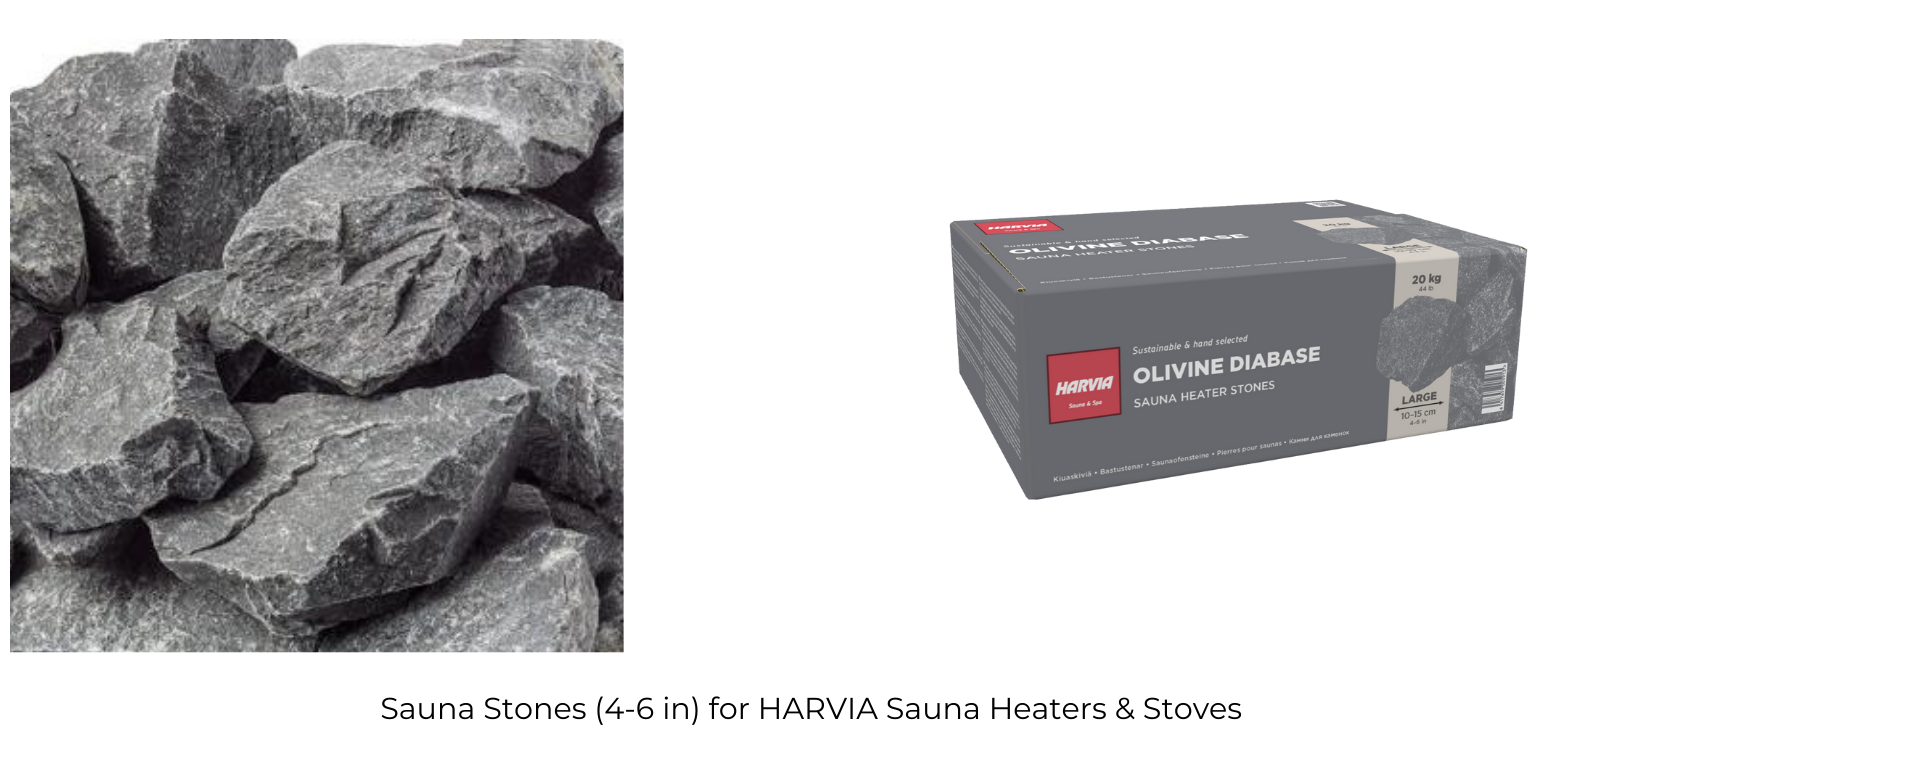 Harvia 36 PRO 31kW Wood-Burning Sauna Stove